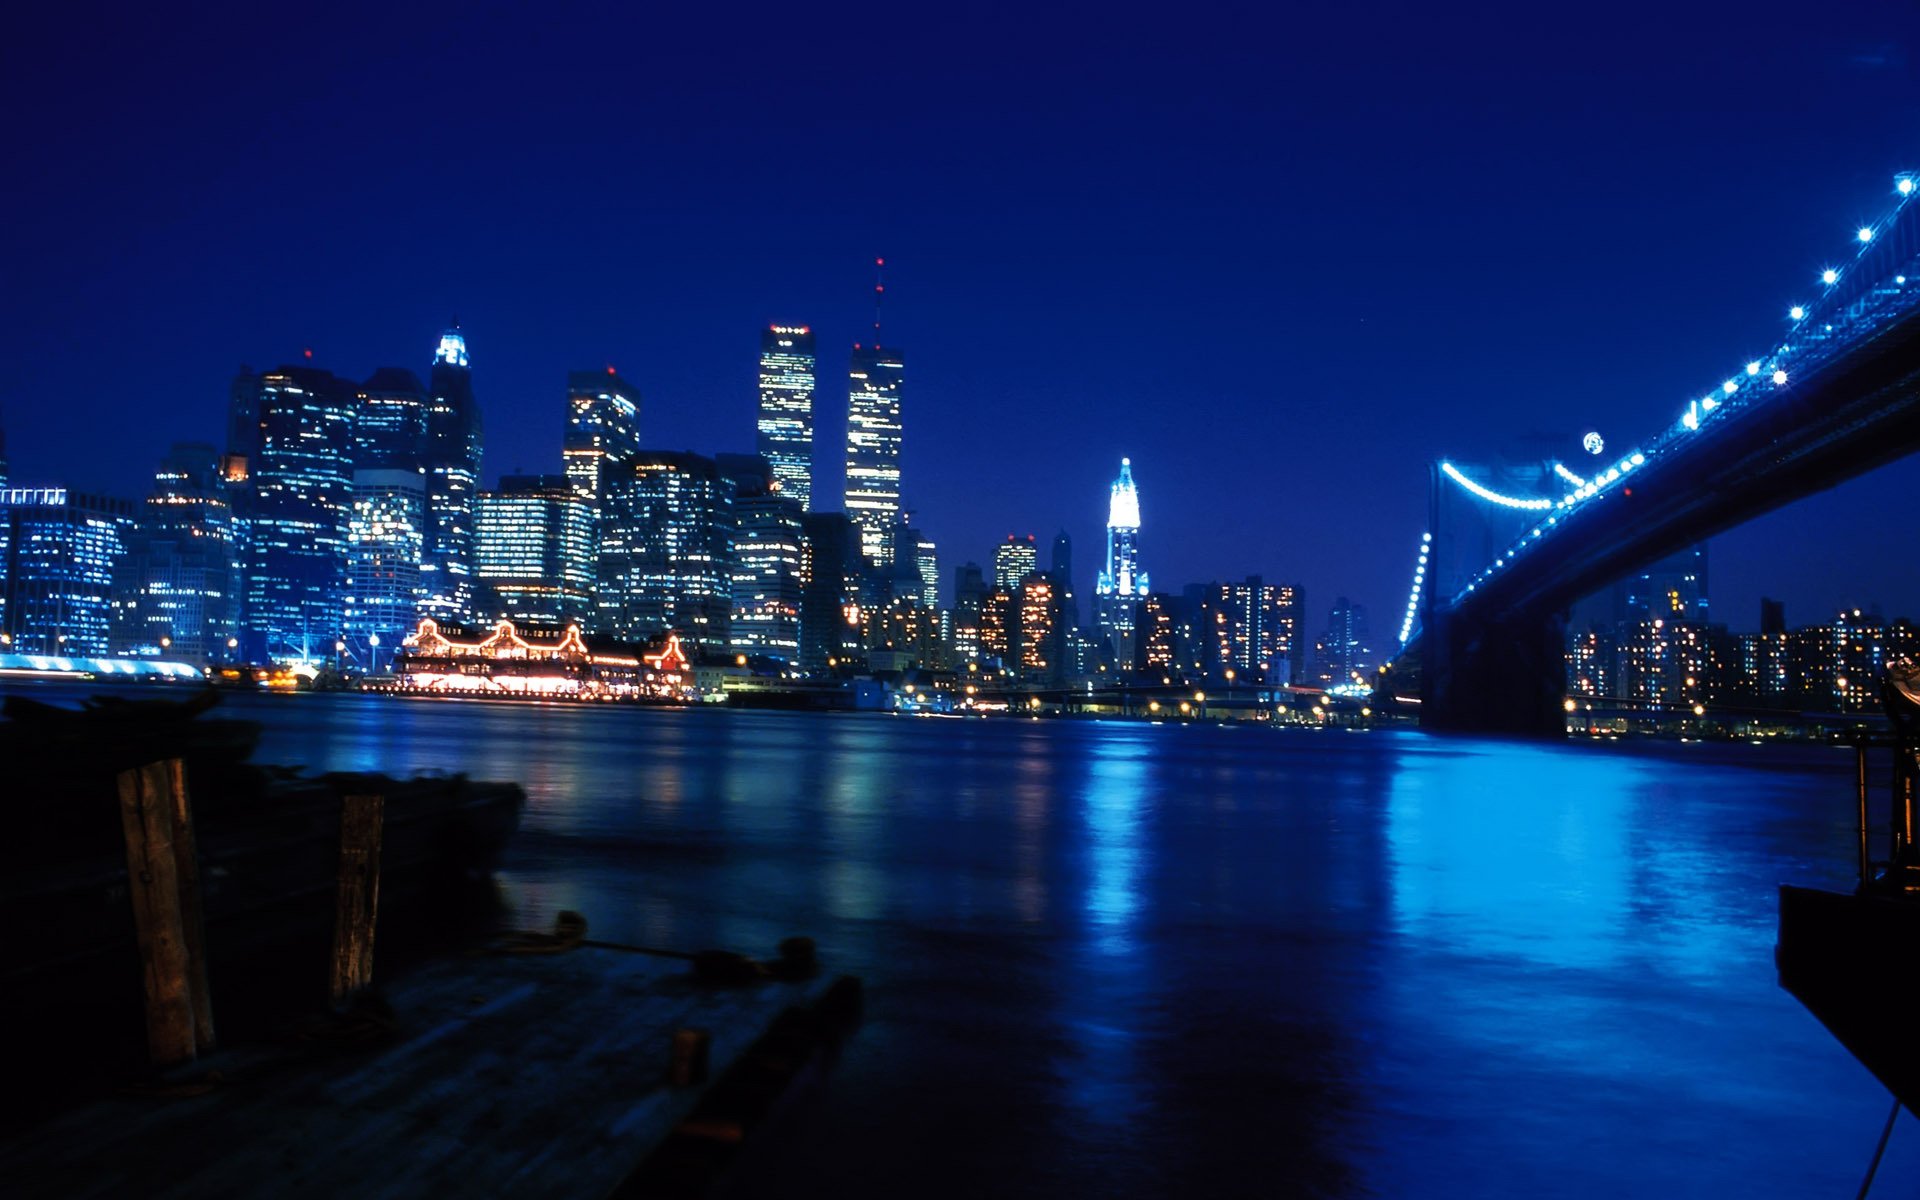 цмт нью-йорк всемирный торговый центр башни-близнецы втц 11 сентября небоскребы река мост ночь город манхэттен обои